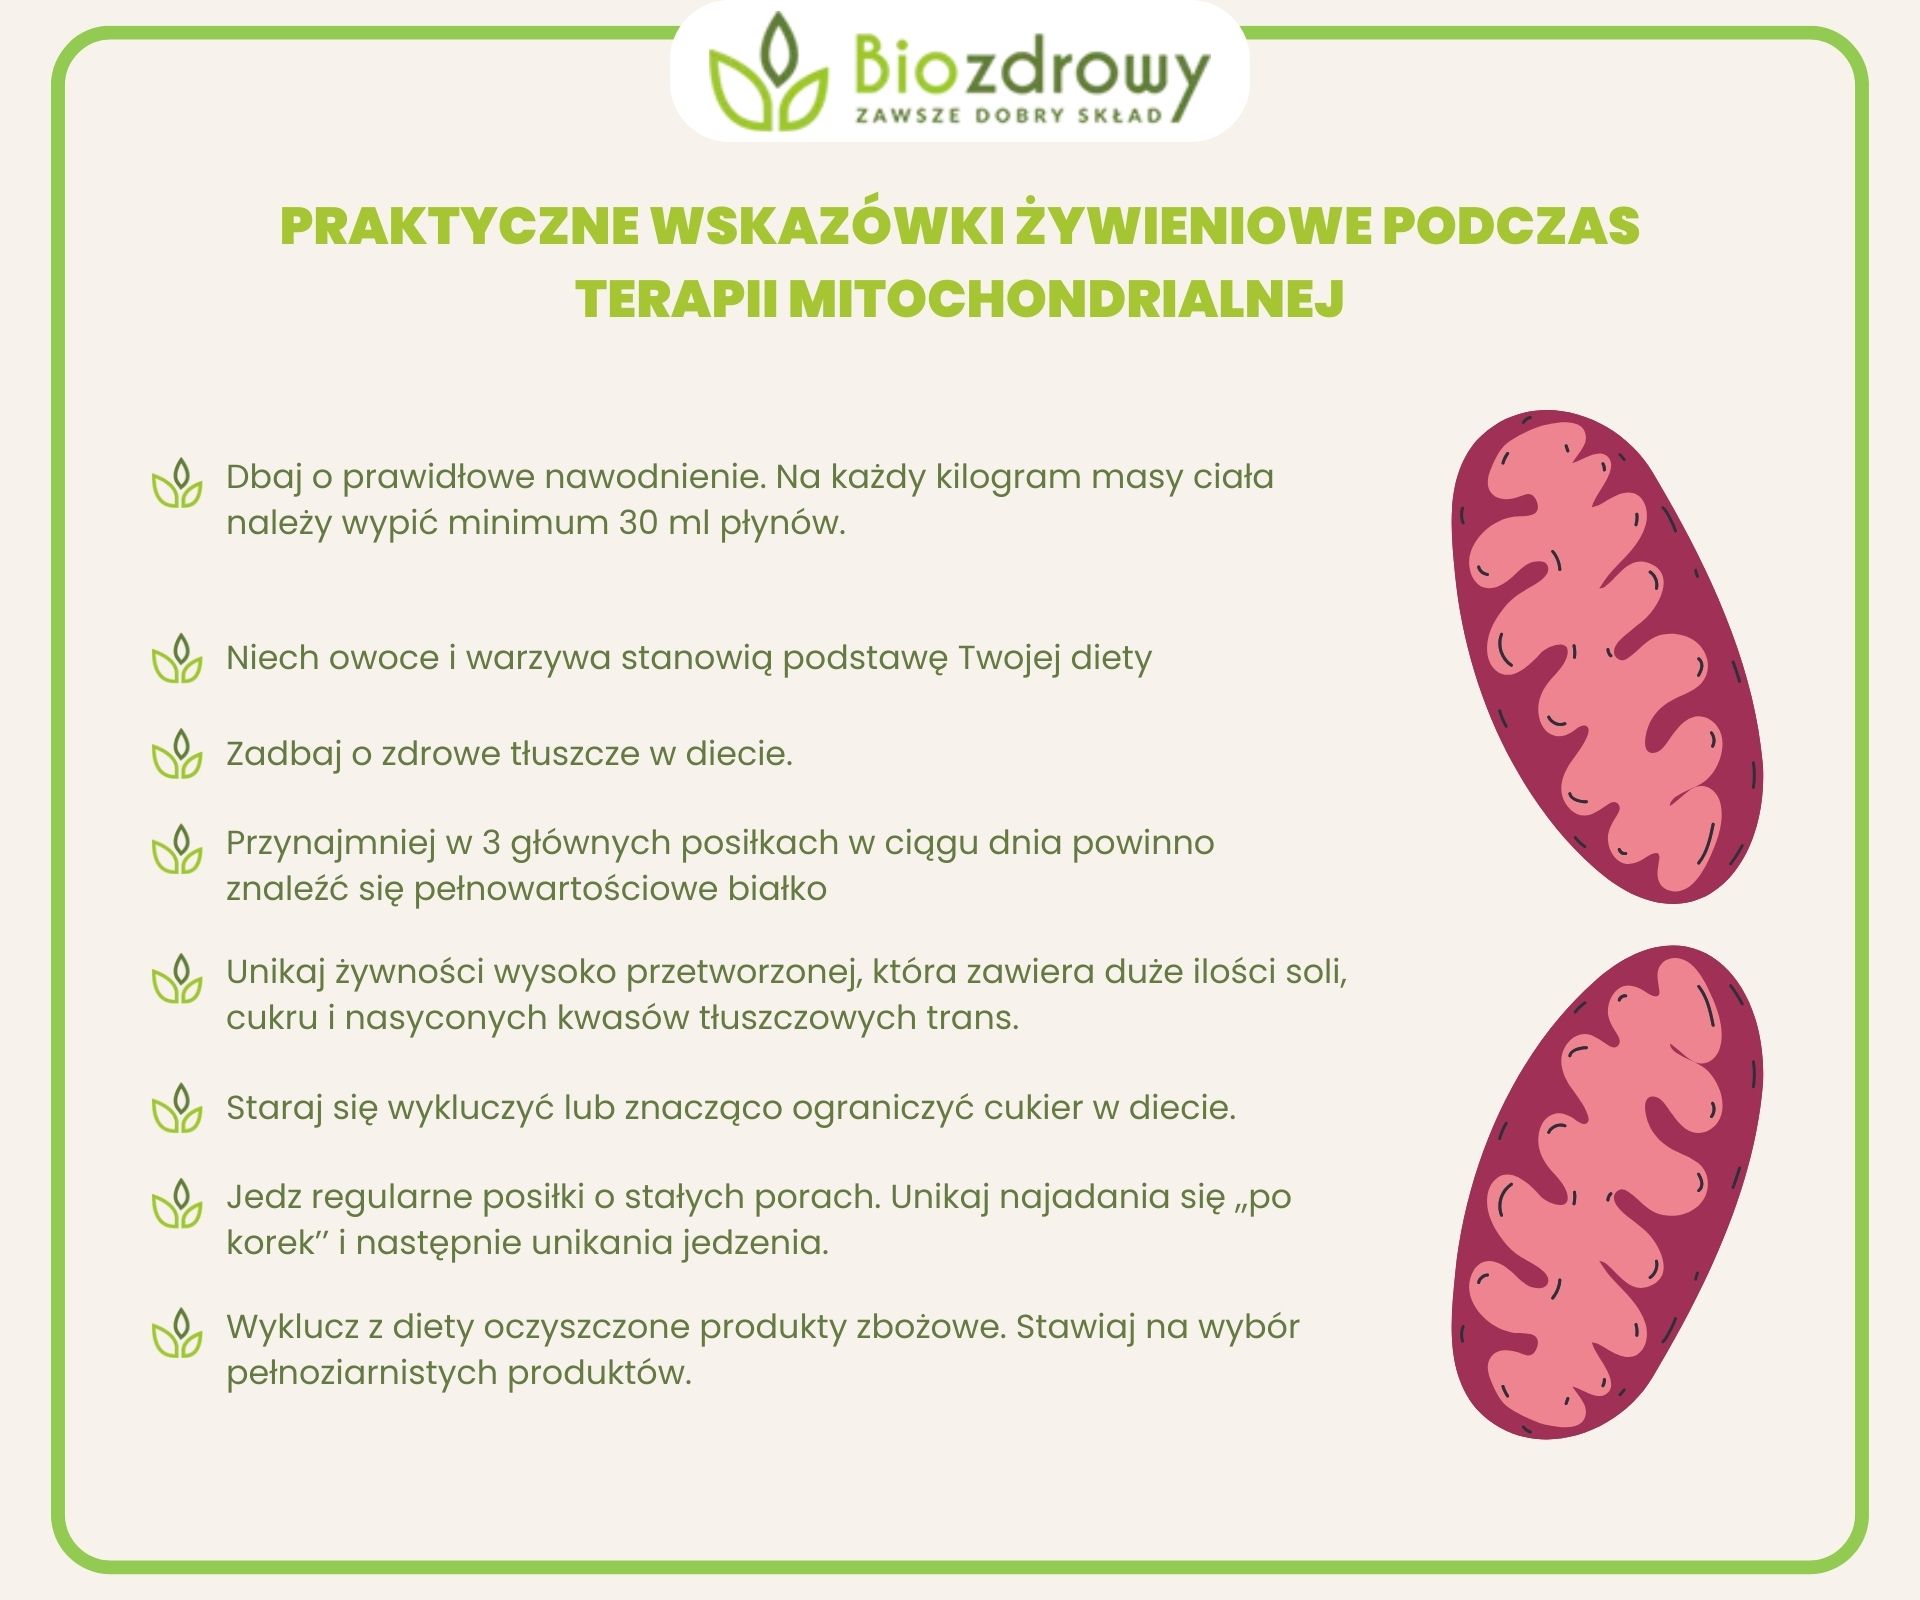 infografika praktyczne wskazówki żywieniowe podczas terapii mitochondrialnej